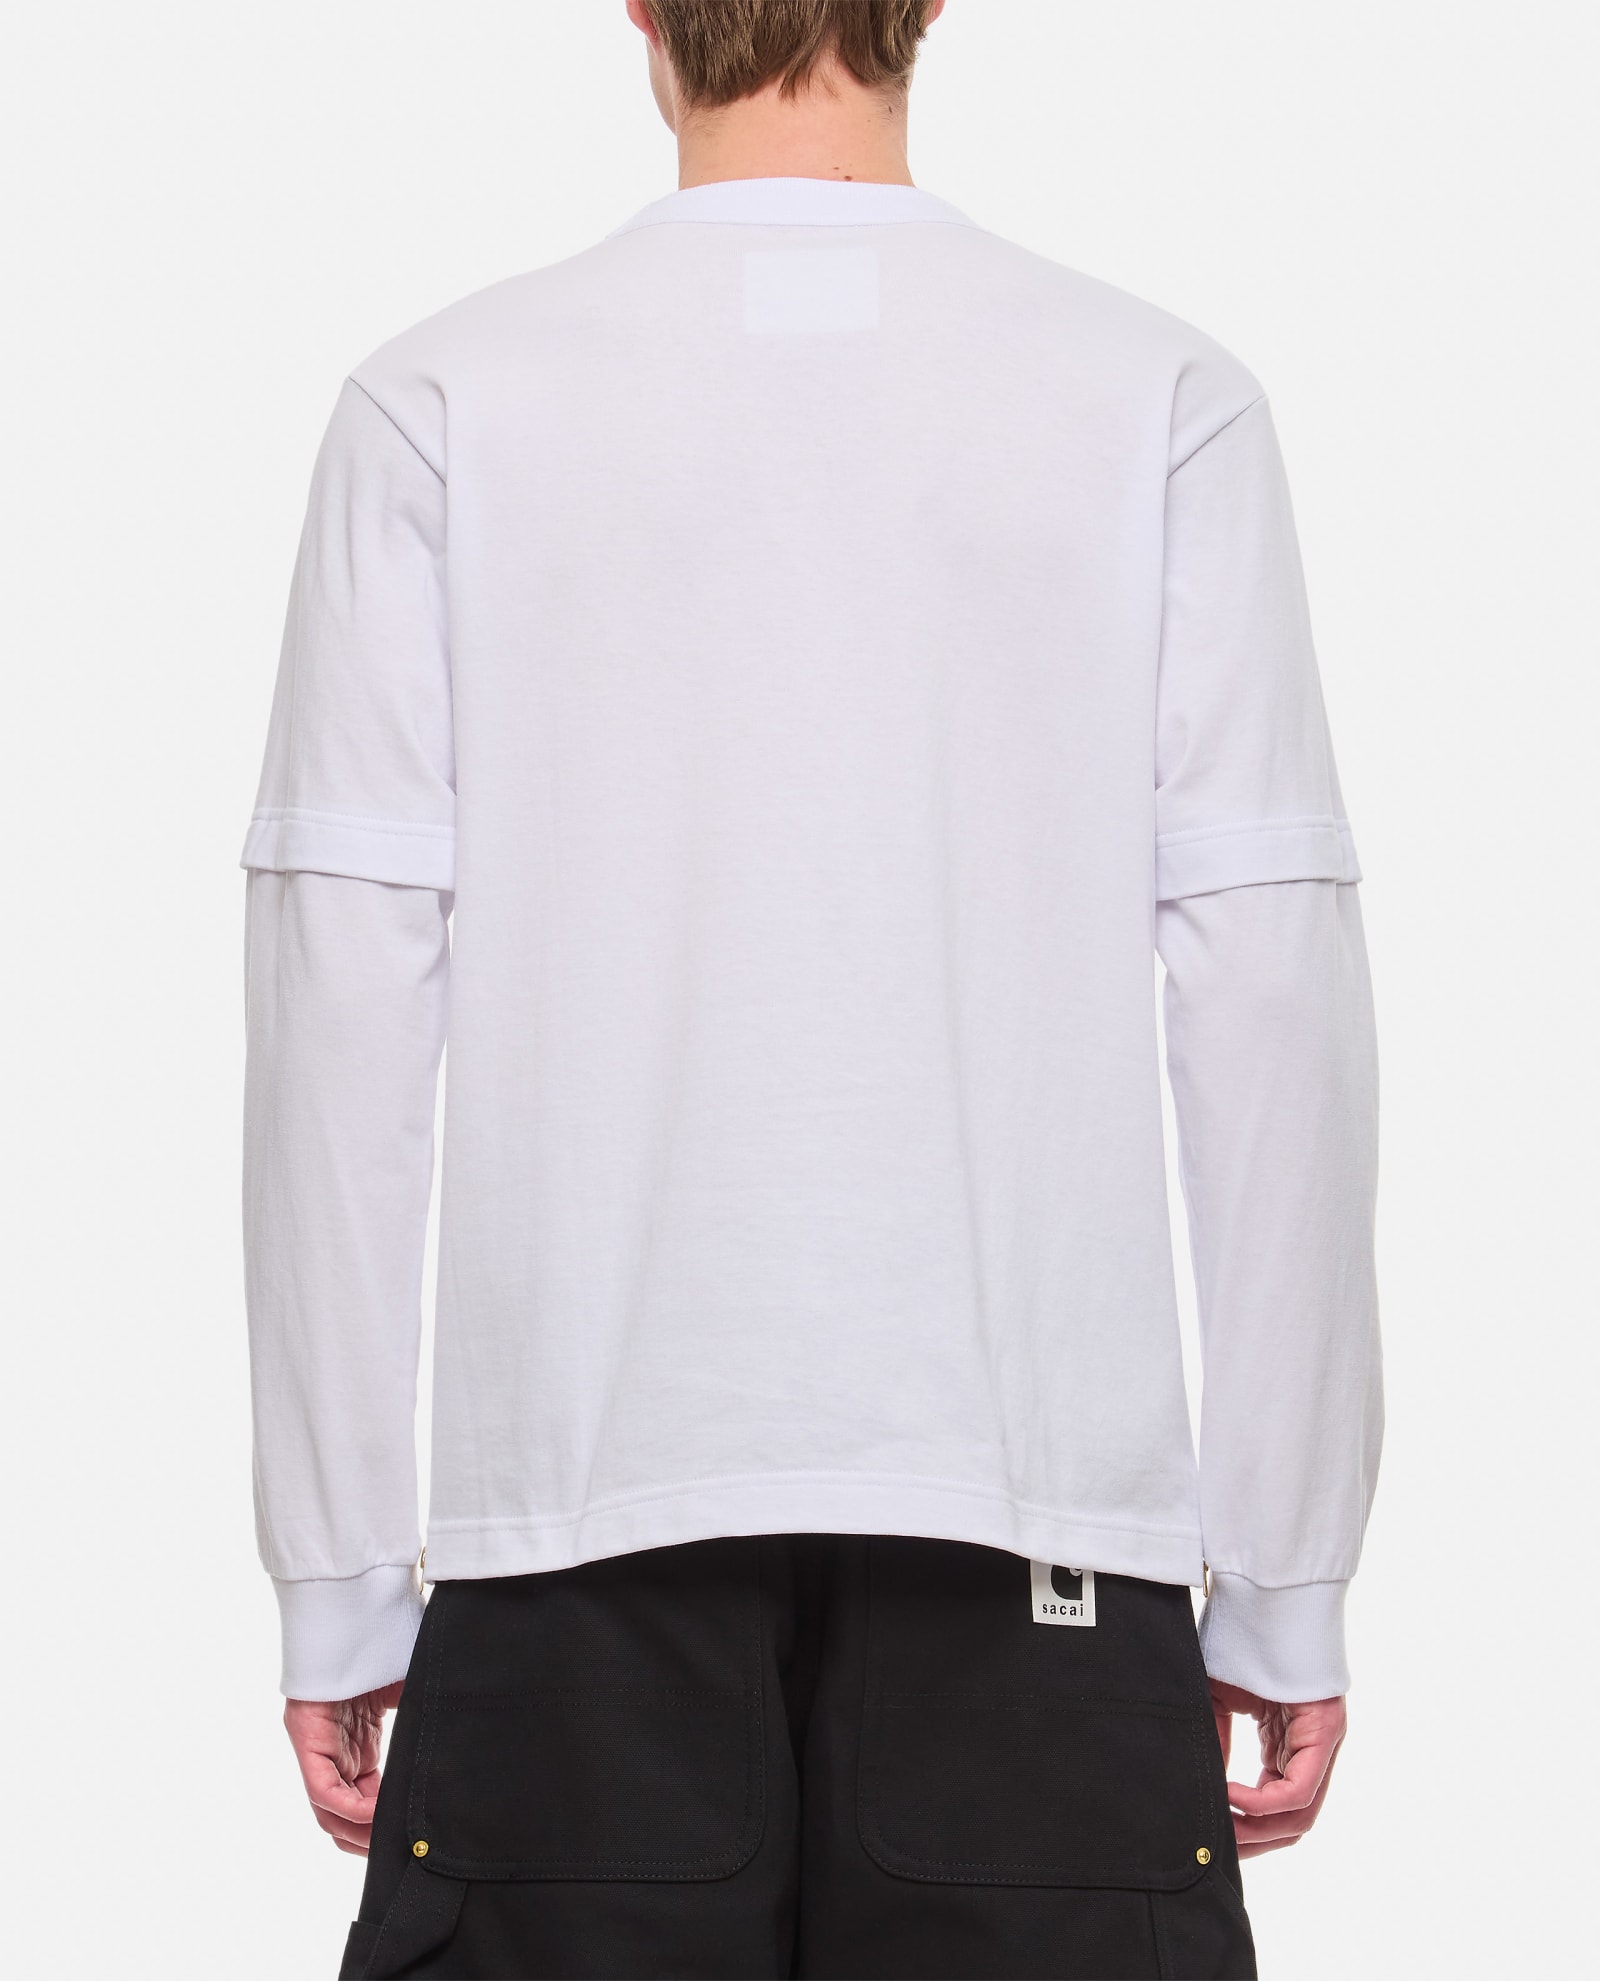 Shop Sacai X Carhartt Wip L/s Cotton T-shirt In White